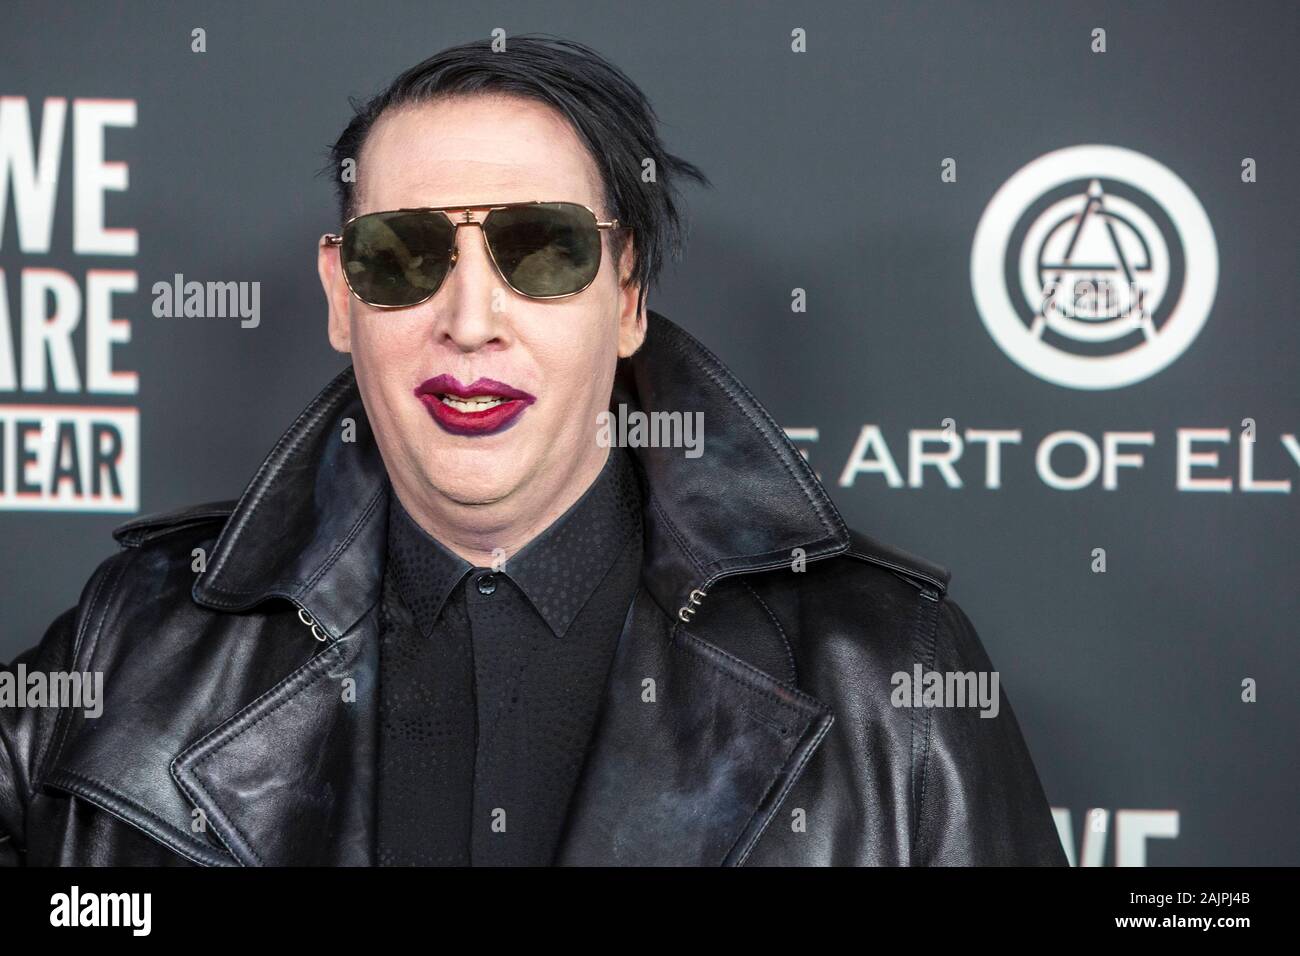 Los Angeles, Stati Uniti d'America. 04 gen, 2020. Marilyn Manson assiste l'arte di Elysium del XIII annuale di Black Tie esperienza artistica "cielo" al Palladium di Hollywood e Los Angeles, California, USA, il 04 gennaio 2020. | Utilizzo di credito in tutto il mondo: dpa picture alliance/Alamy Live News Foto Stock